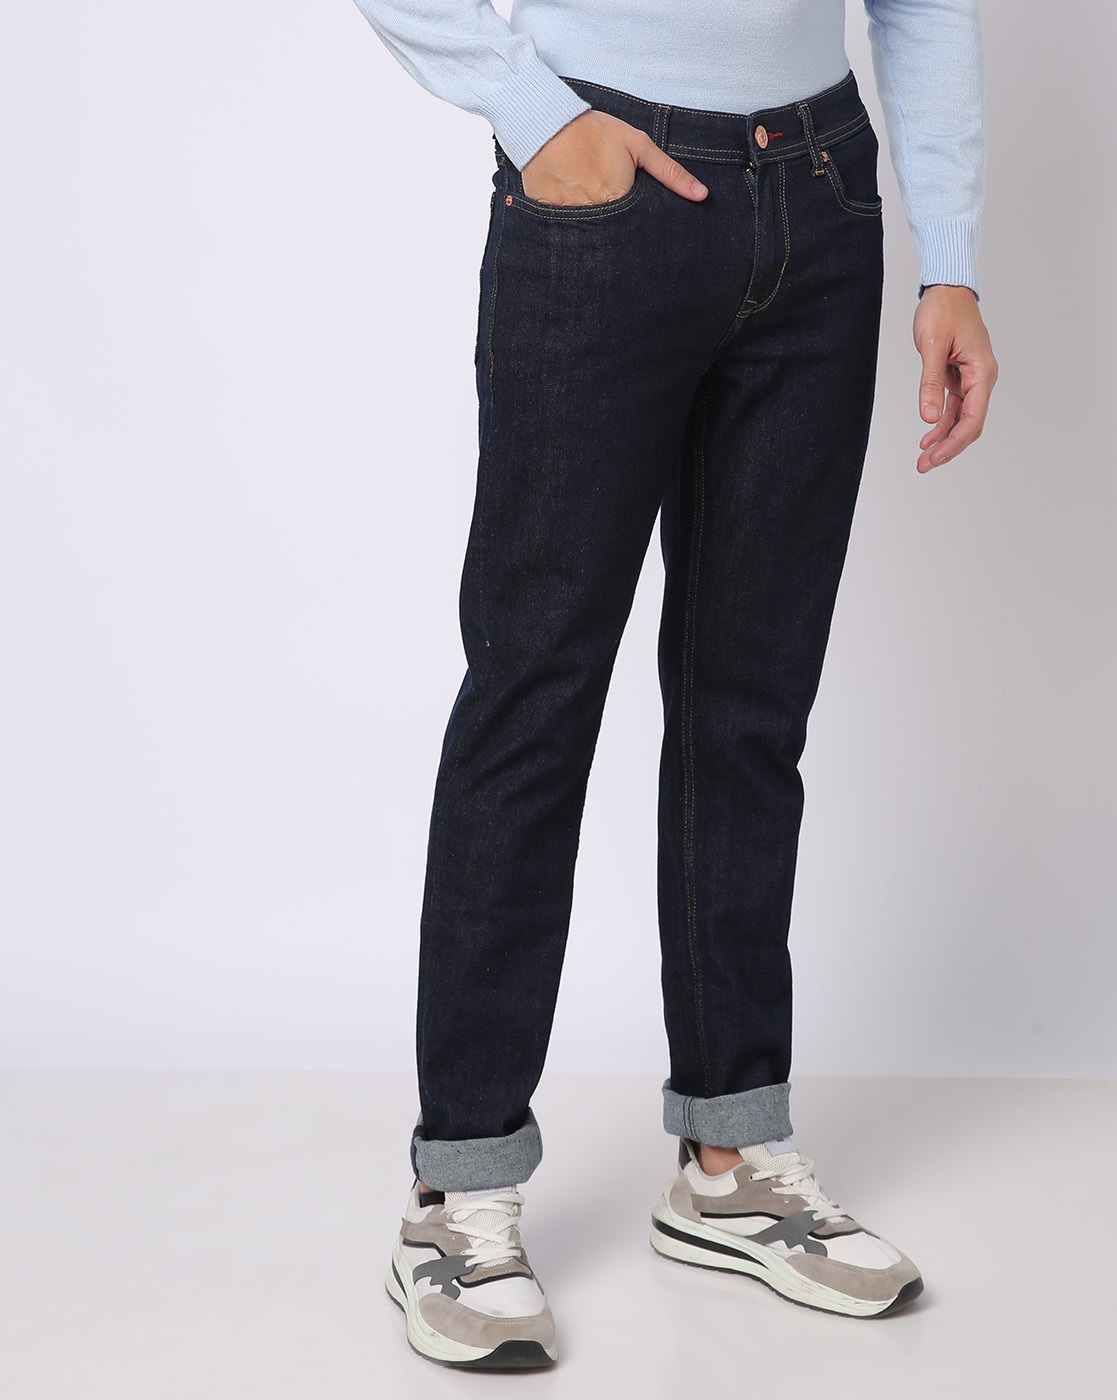 Lee Cooper Jeans | Lee cooper jeans, Jeans shop, Clothes design